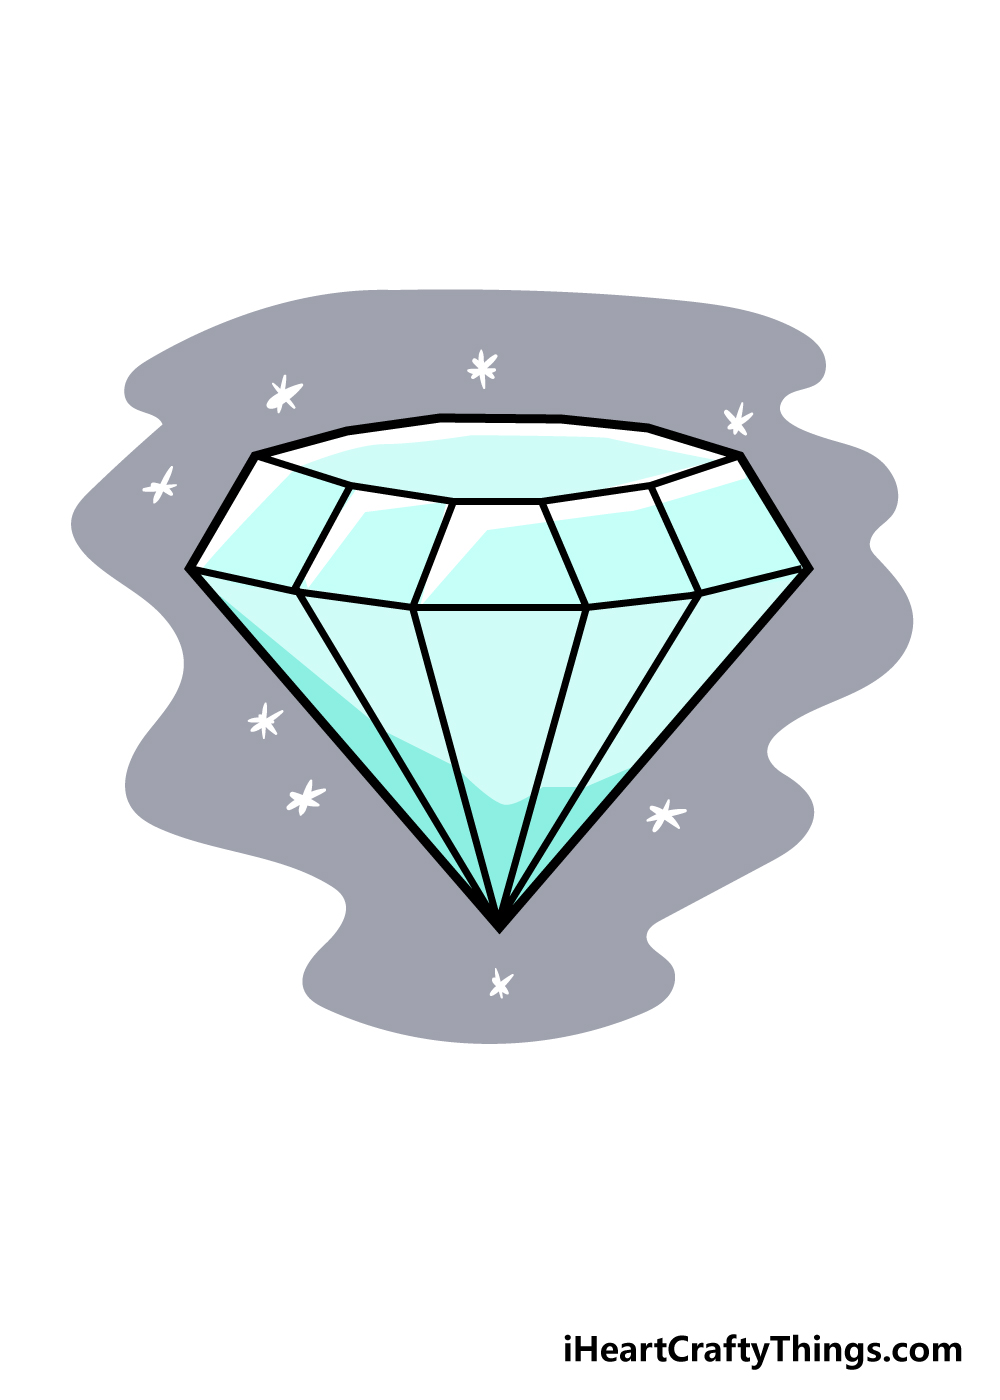 draw diamond step 6